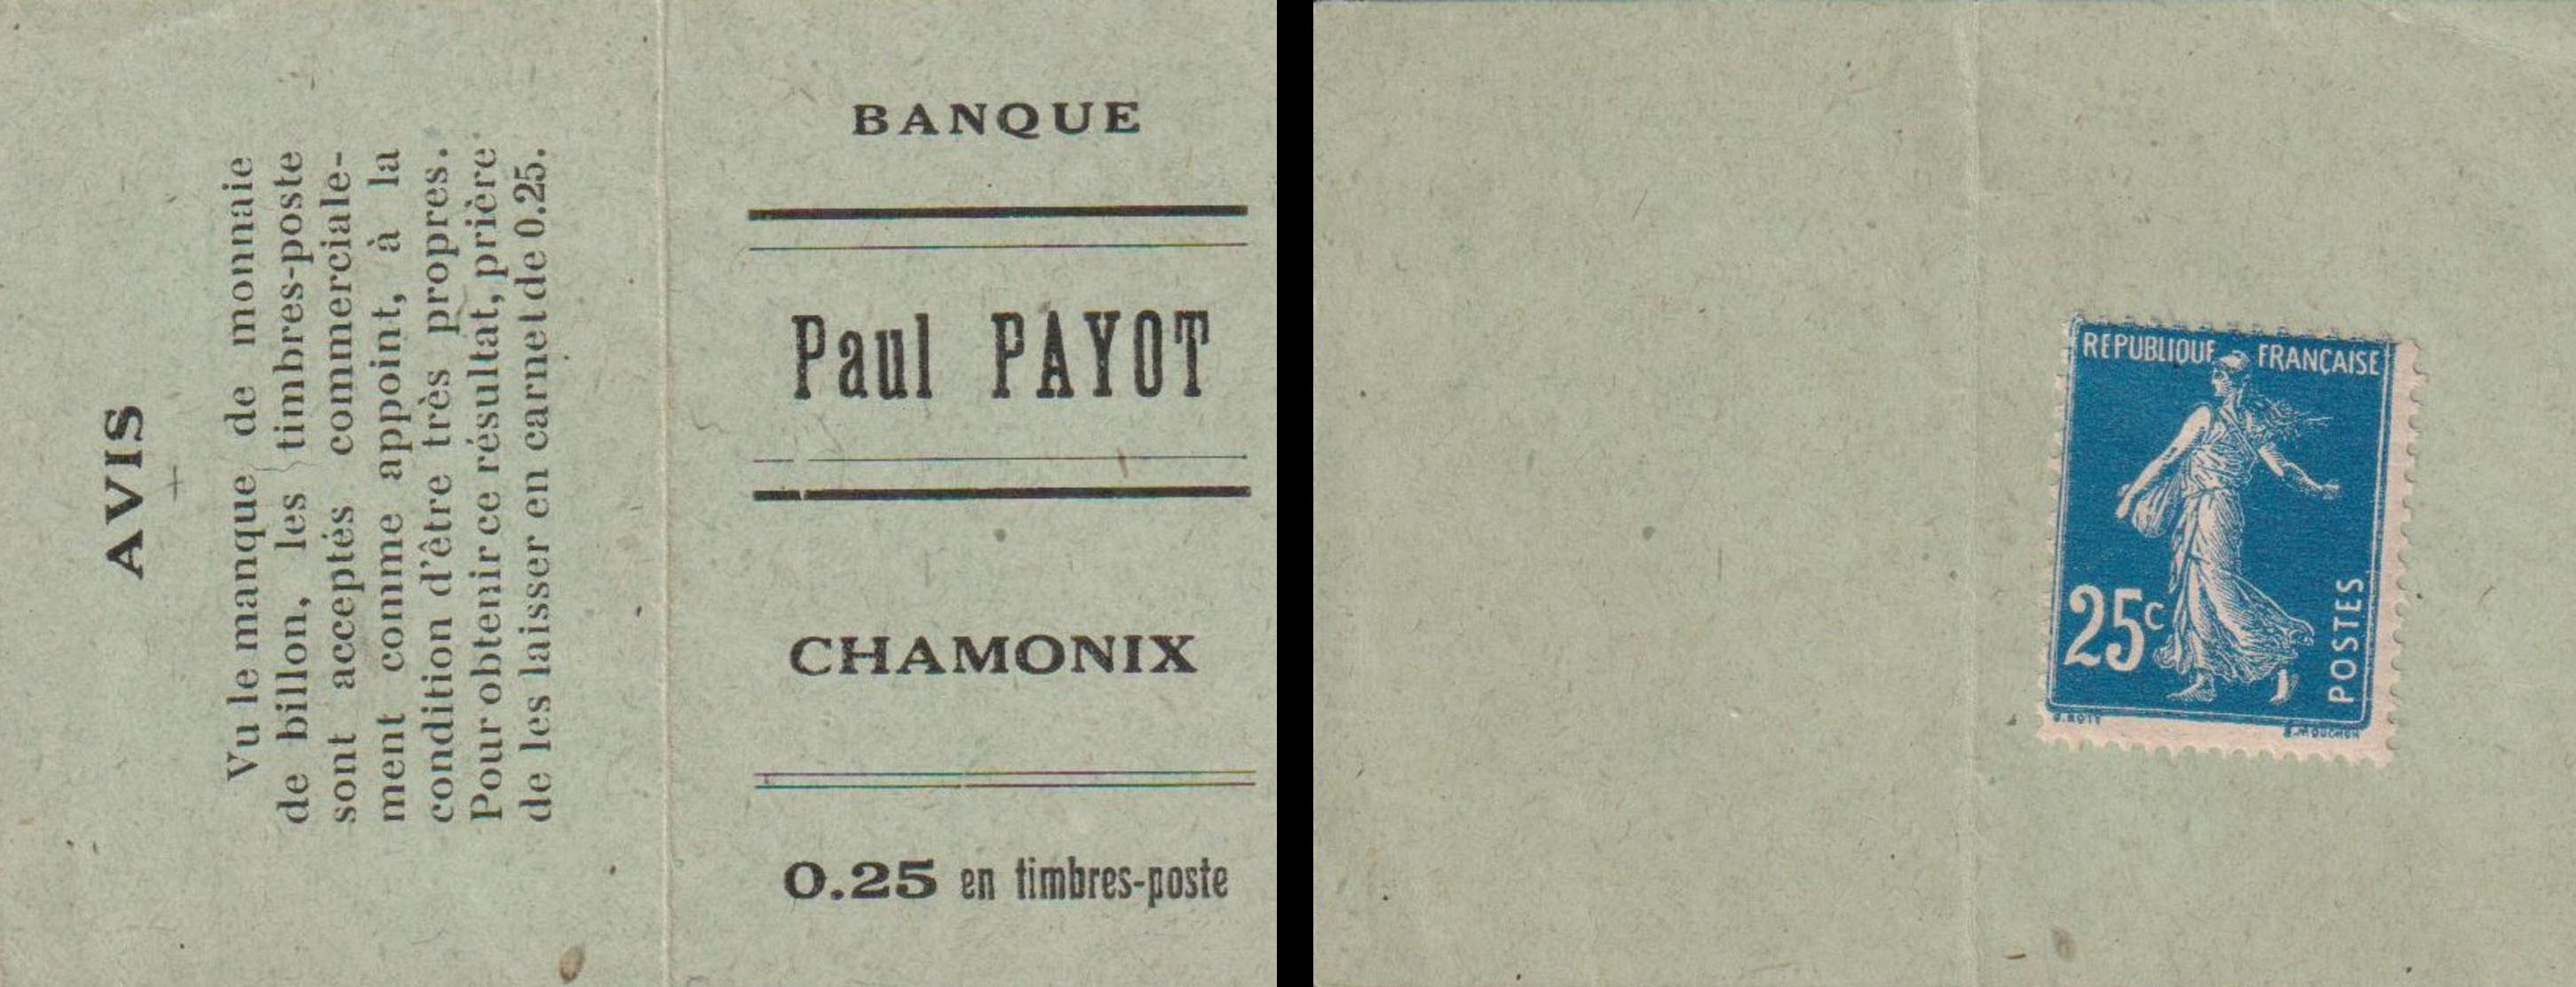 Carnet de 25 centimes Banque Paul Payot a été vendu 2.222€ le 25 mars 2020 sur Delcampe